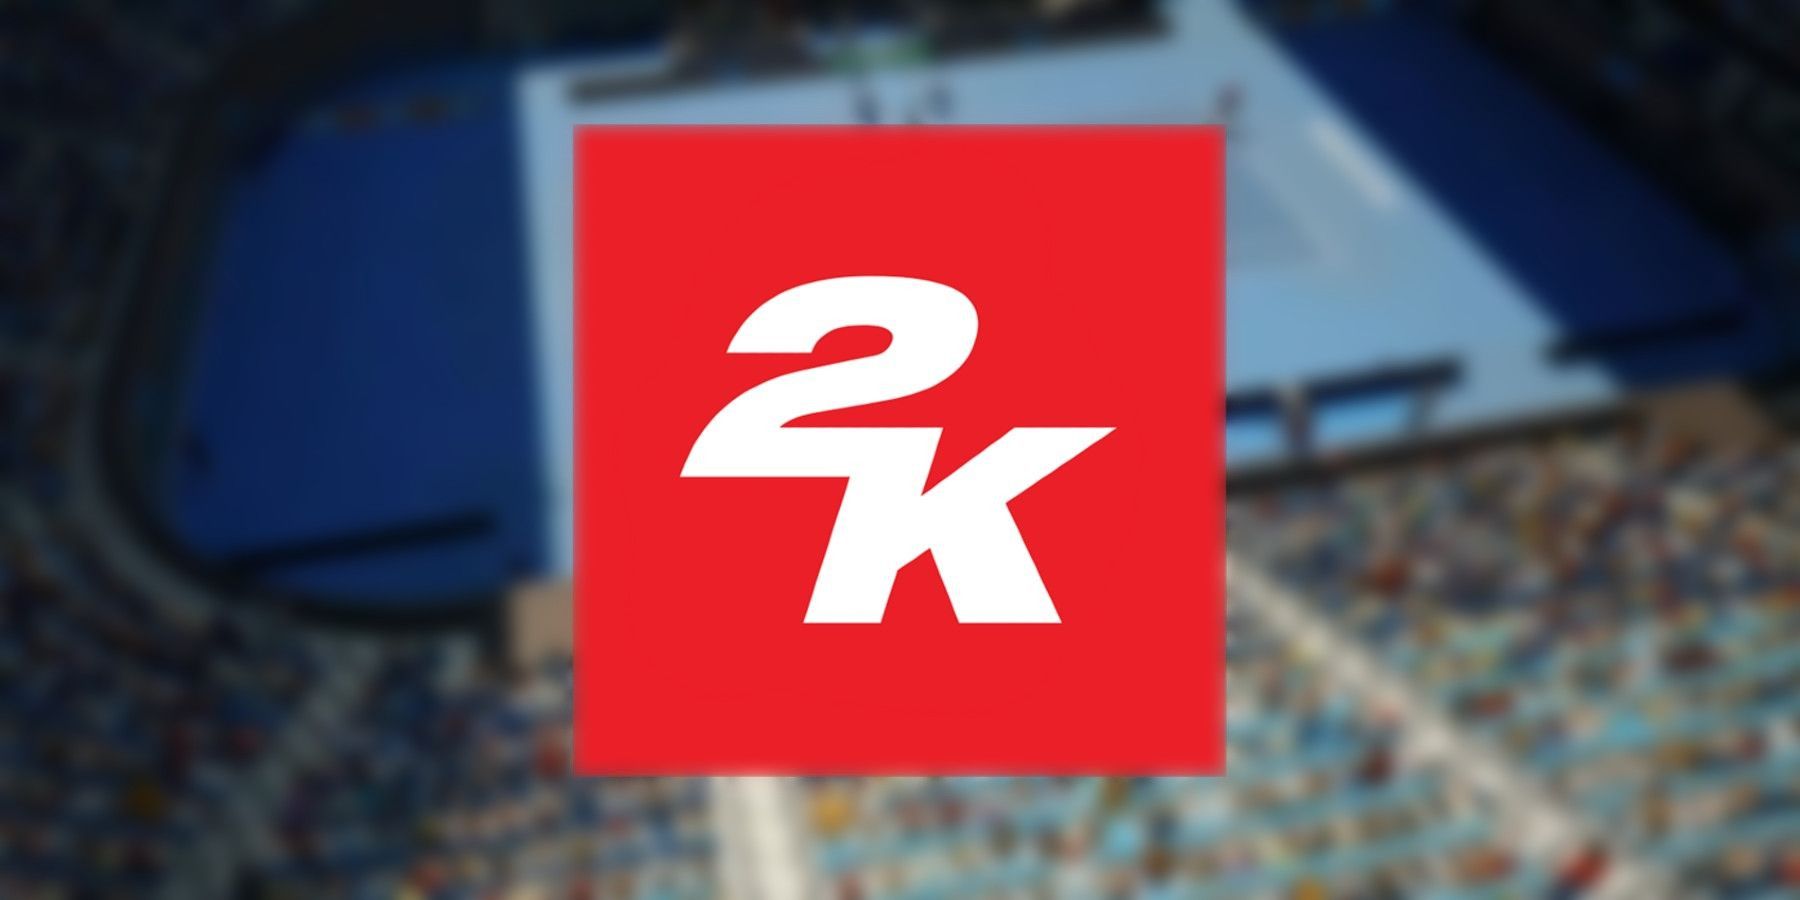 2k games logo tennis court blurred